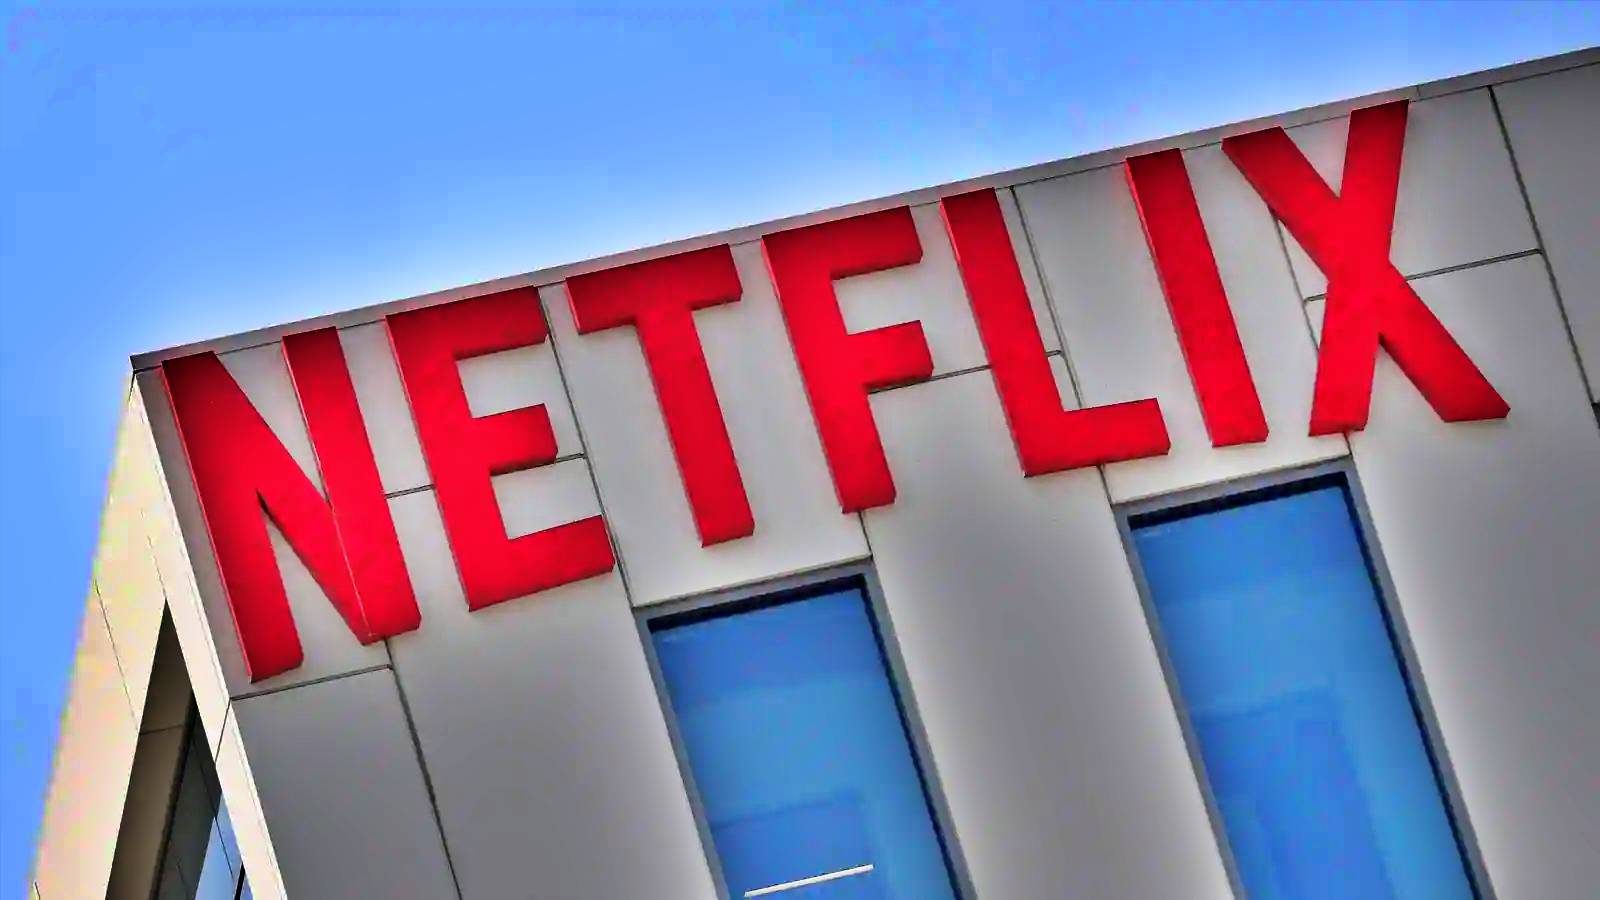 Netflix extrem wichtige Woche Die Zukunft der VOD-Streaming-Plattform